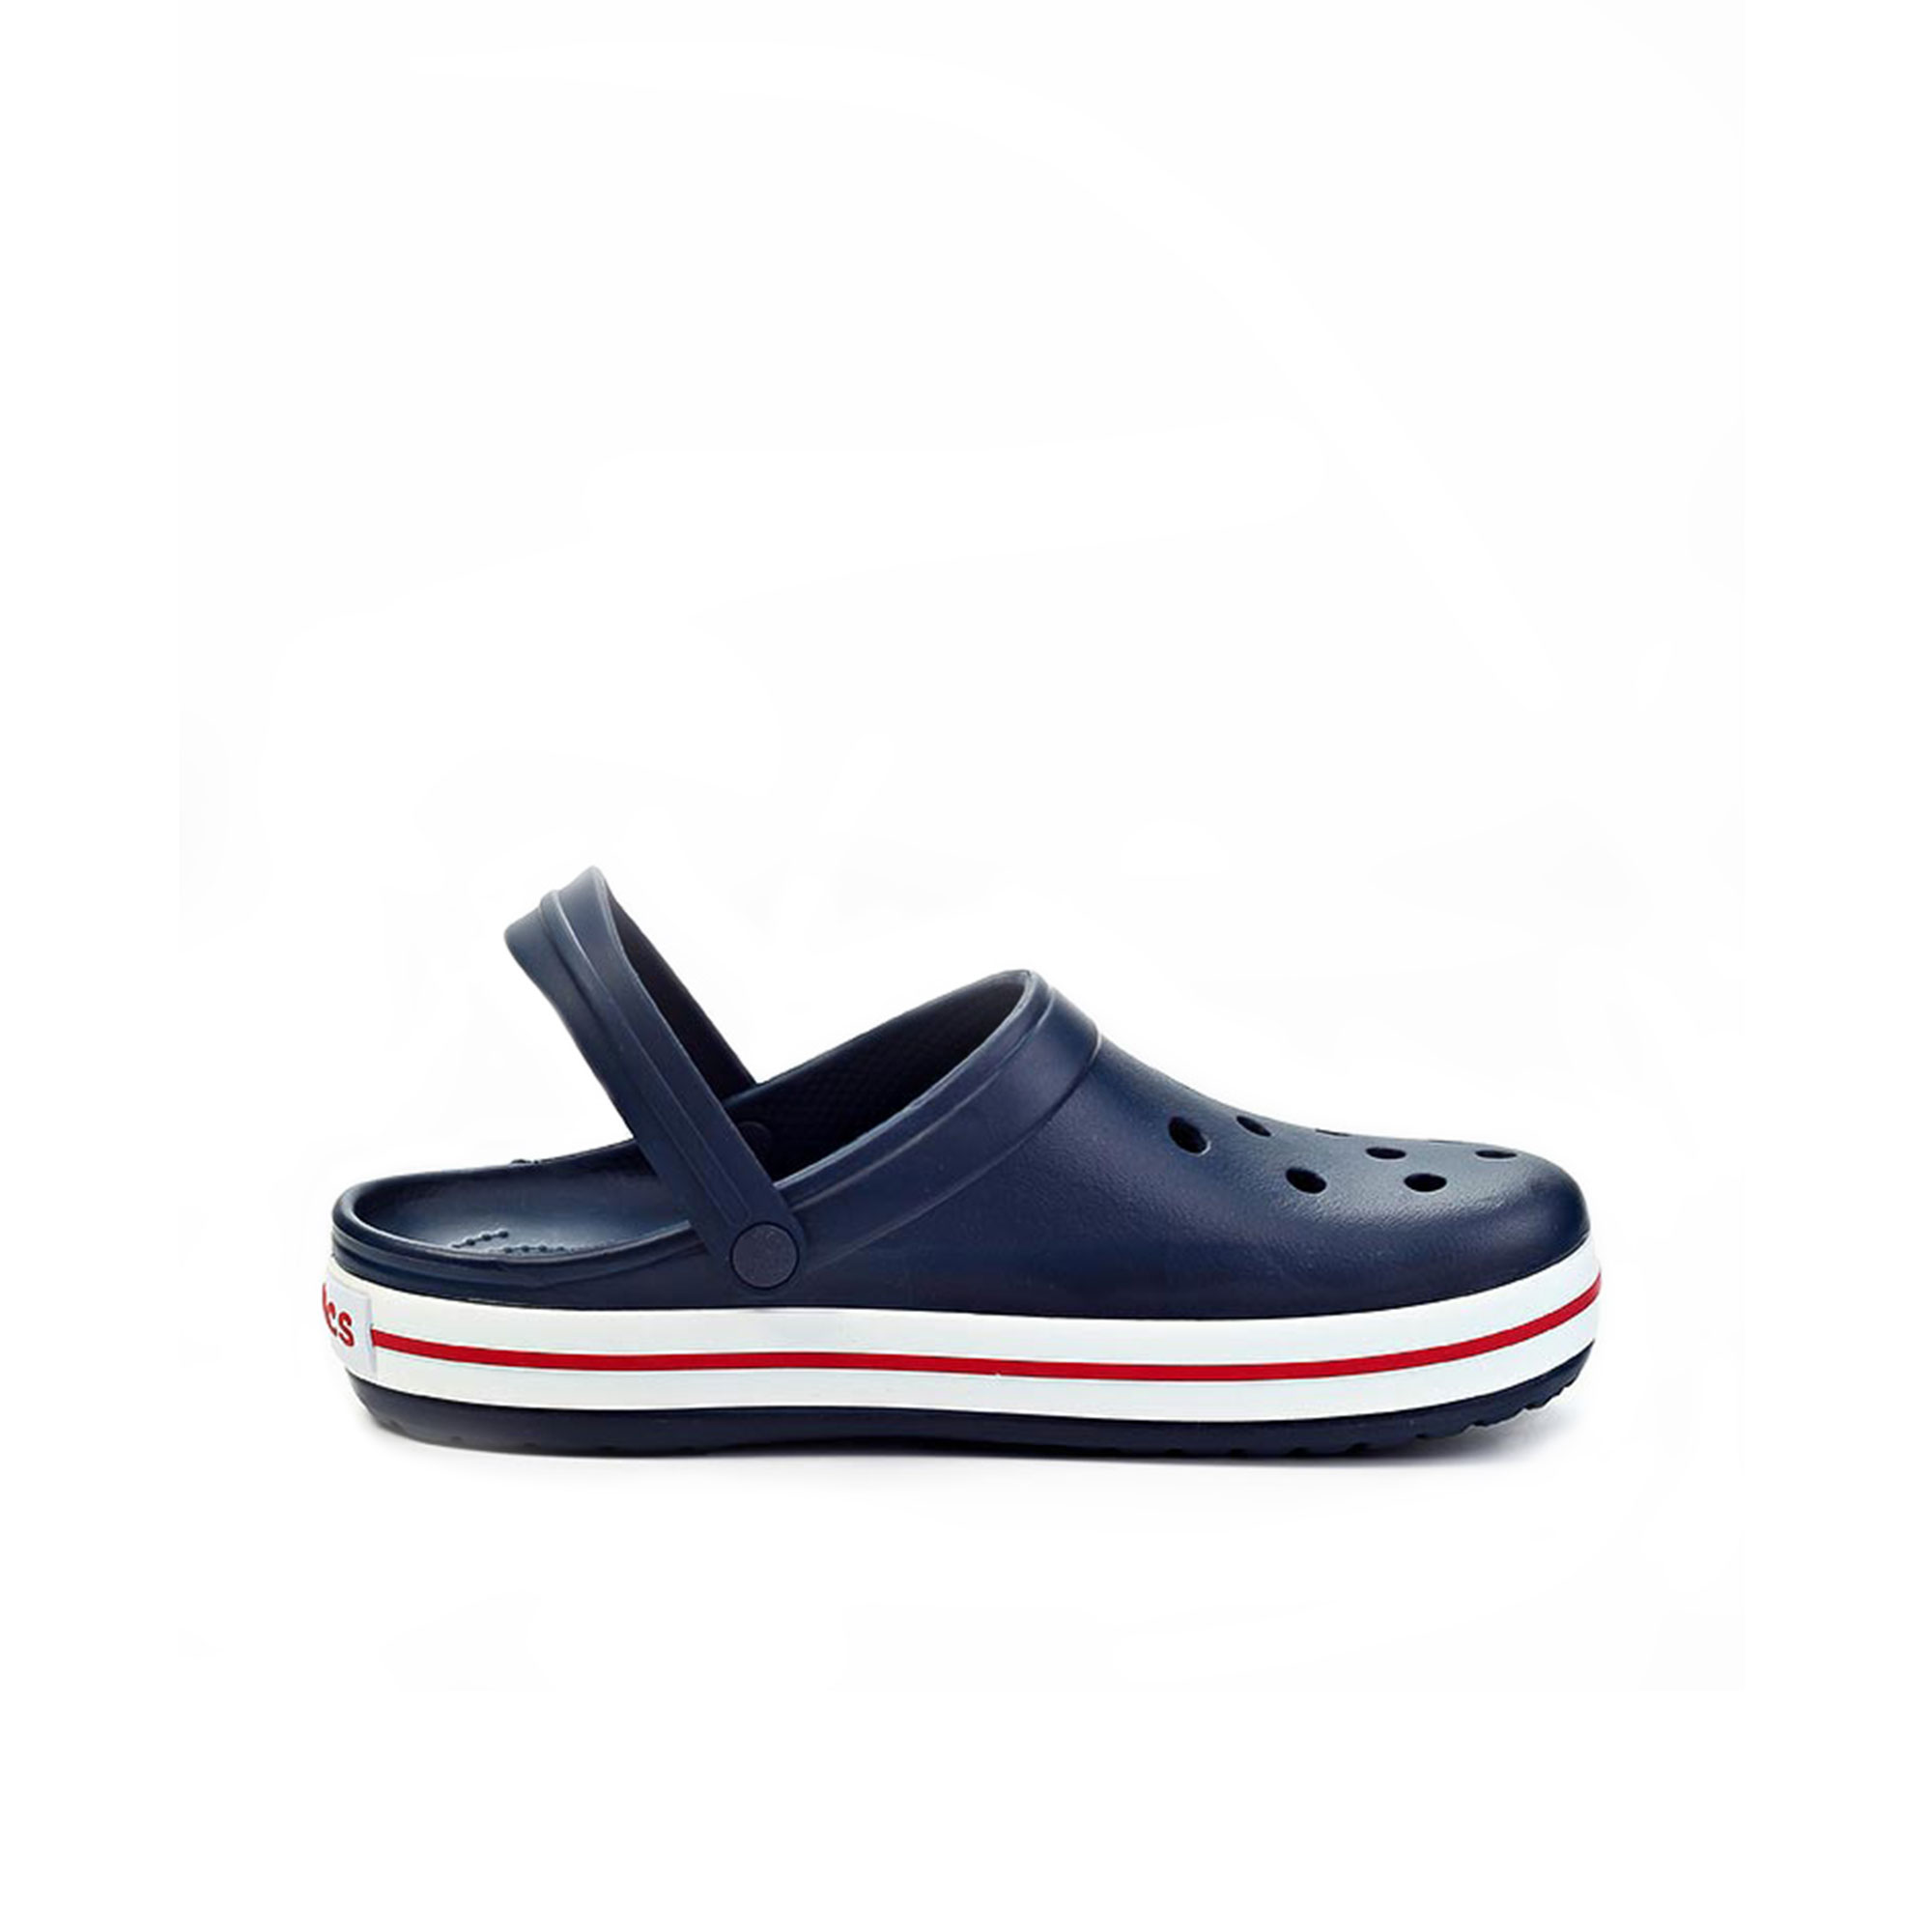 Crocband Crocs, размер 35-36, цвет синий CR11016 - фото 1